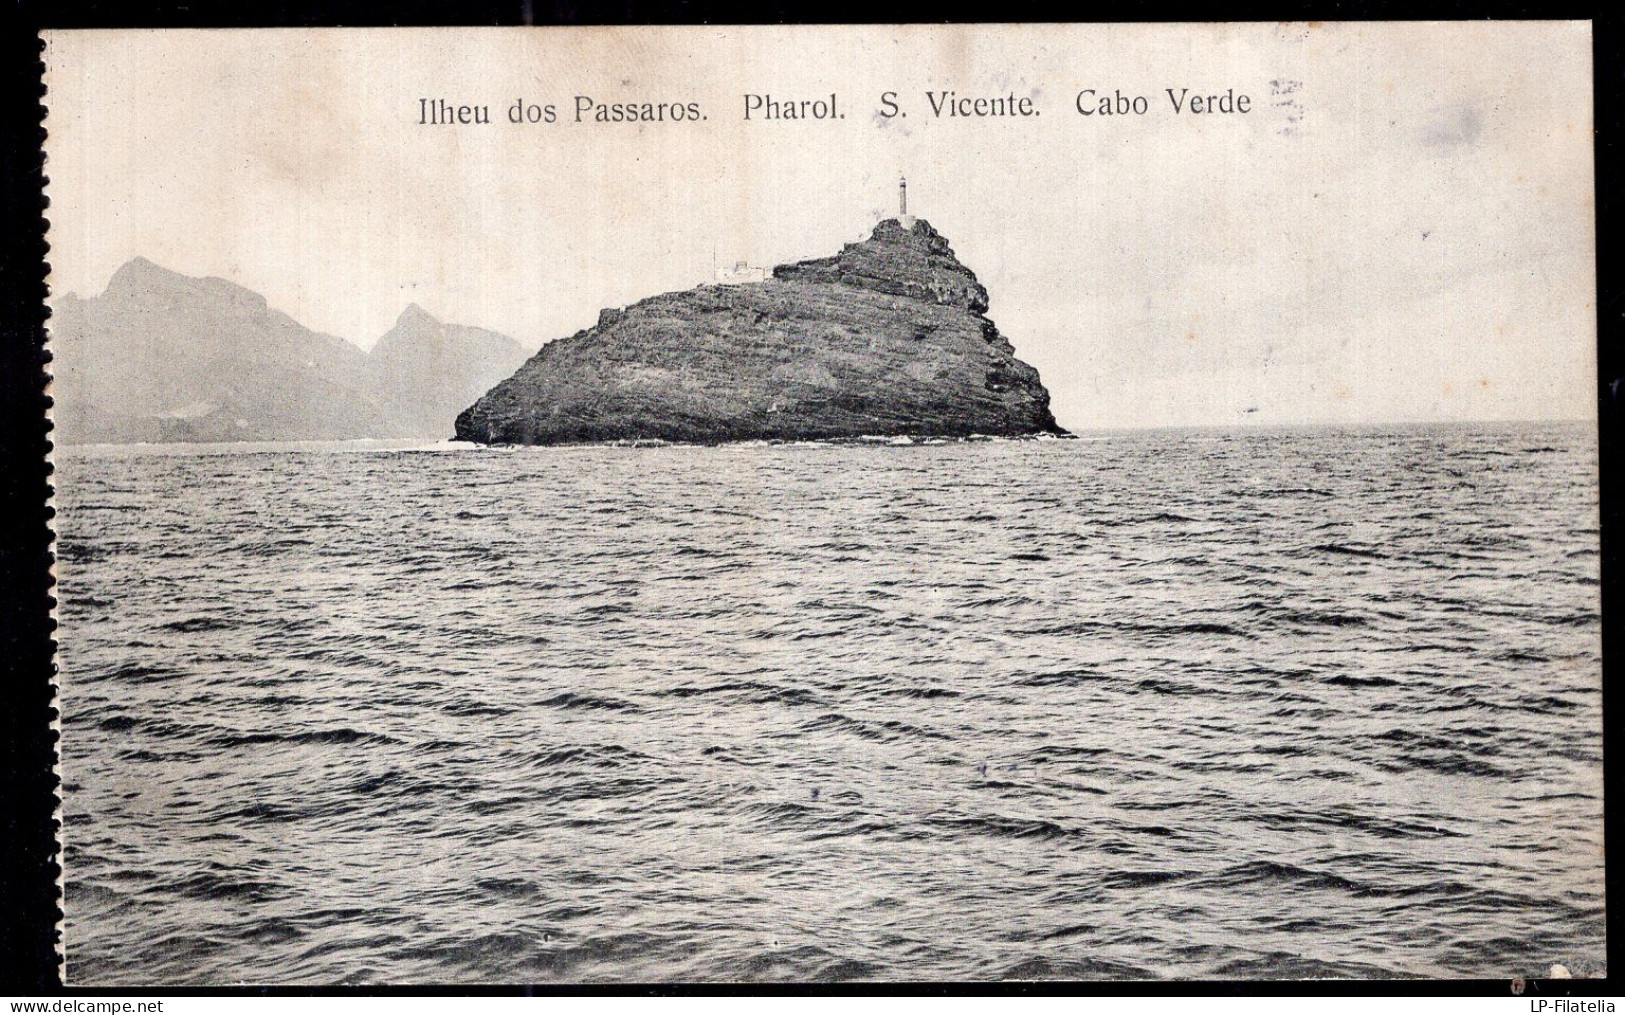 Cabo Verde - Circa 1920 - St. Vincent - Ilheu Dos Passaros - Pharol - Cabo Verde